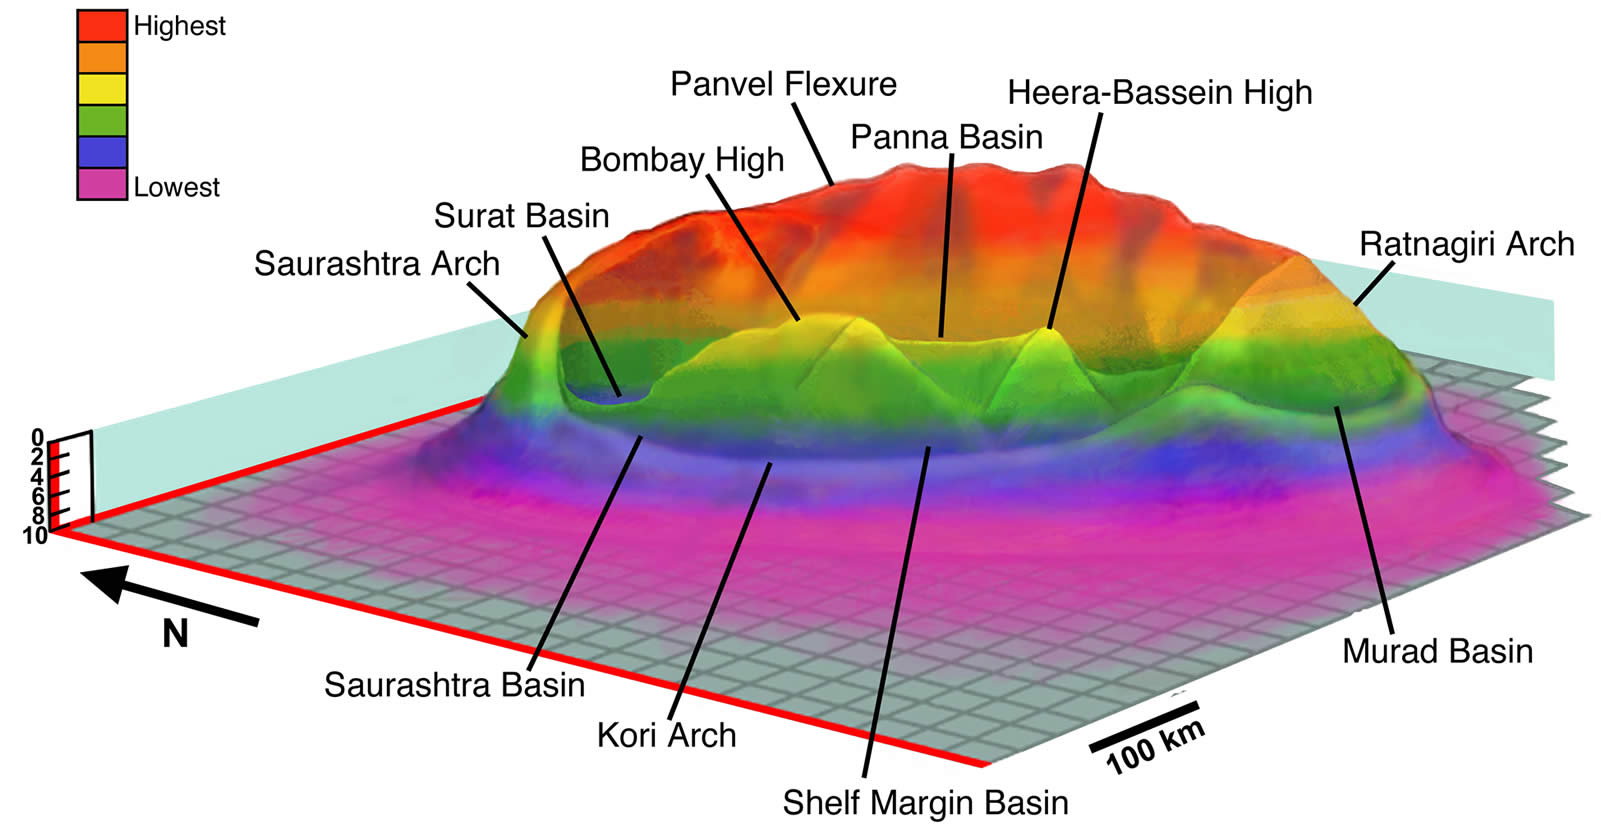 La structure du présumé cratère Shiva selon Sankar Chatterjee. Crédit : Sankar Chatterjee